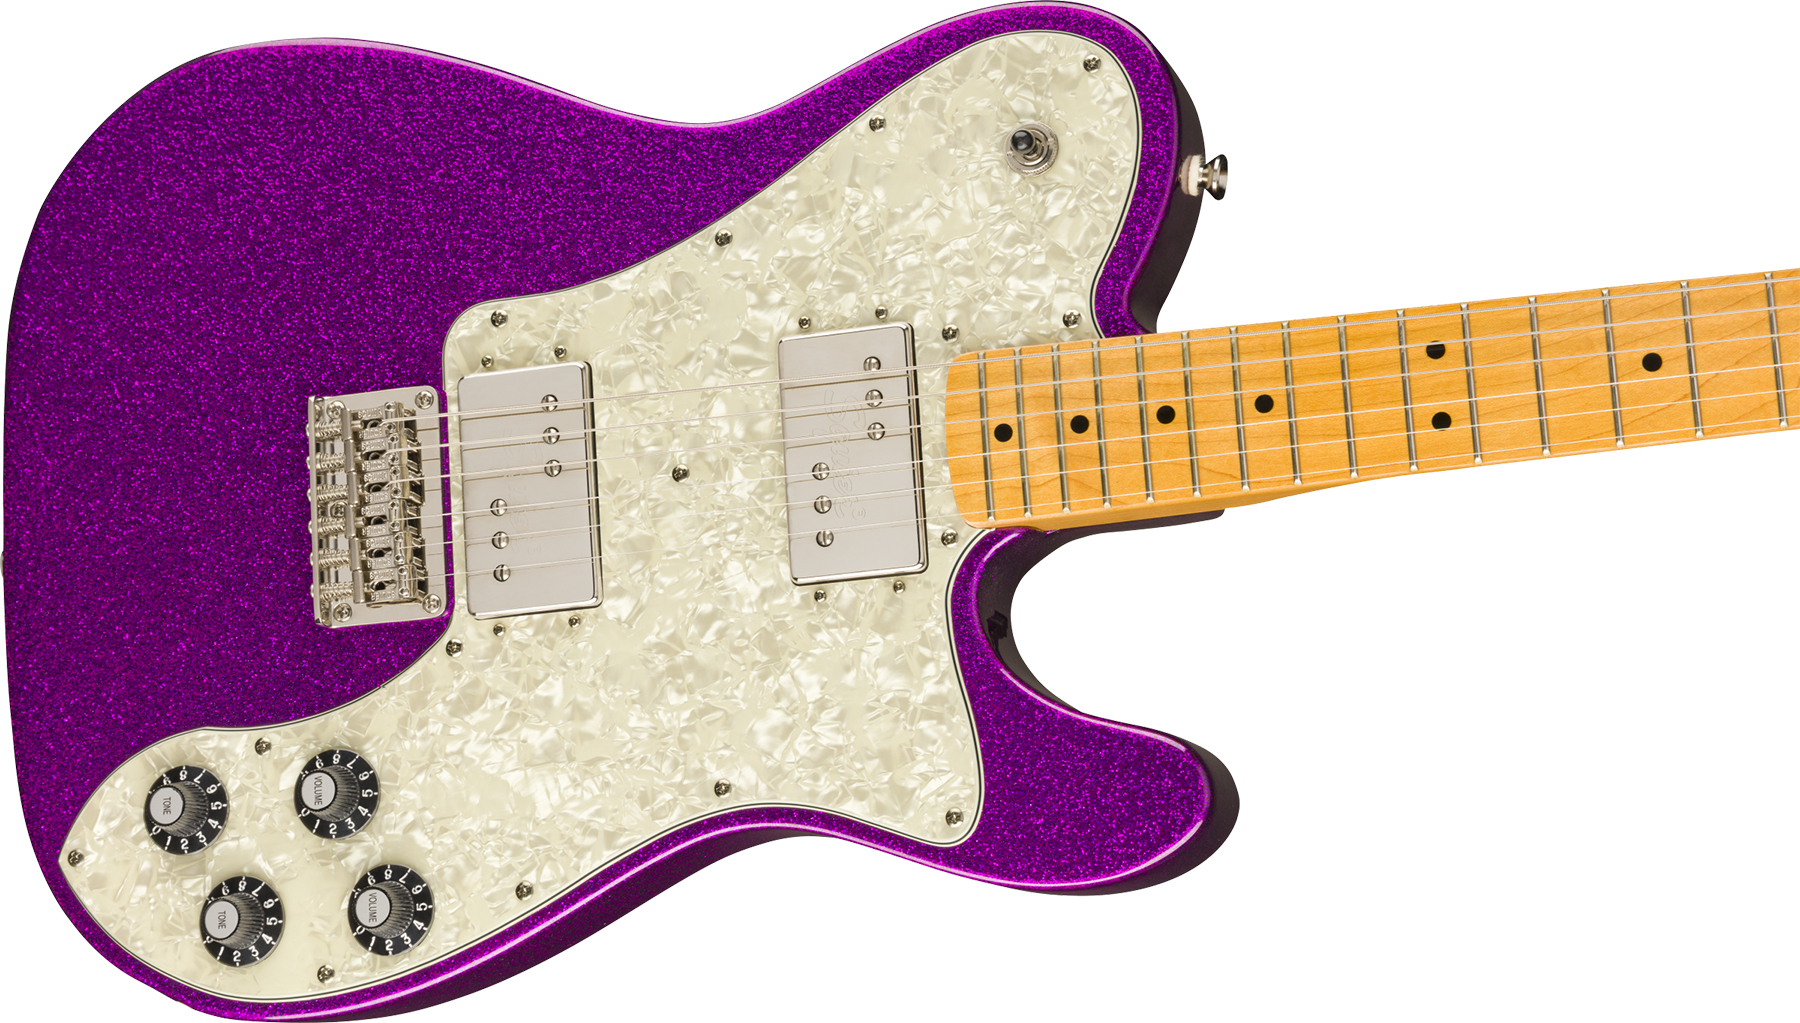 Squier Tele Deluxe Classic Vibe 70 Fsr Ltd 2020 Hh Htmn - Purple Sparkle - Guitarra eléctrica con forma de tel - Variation 2